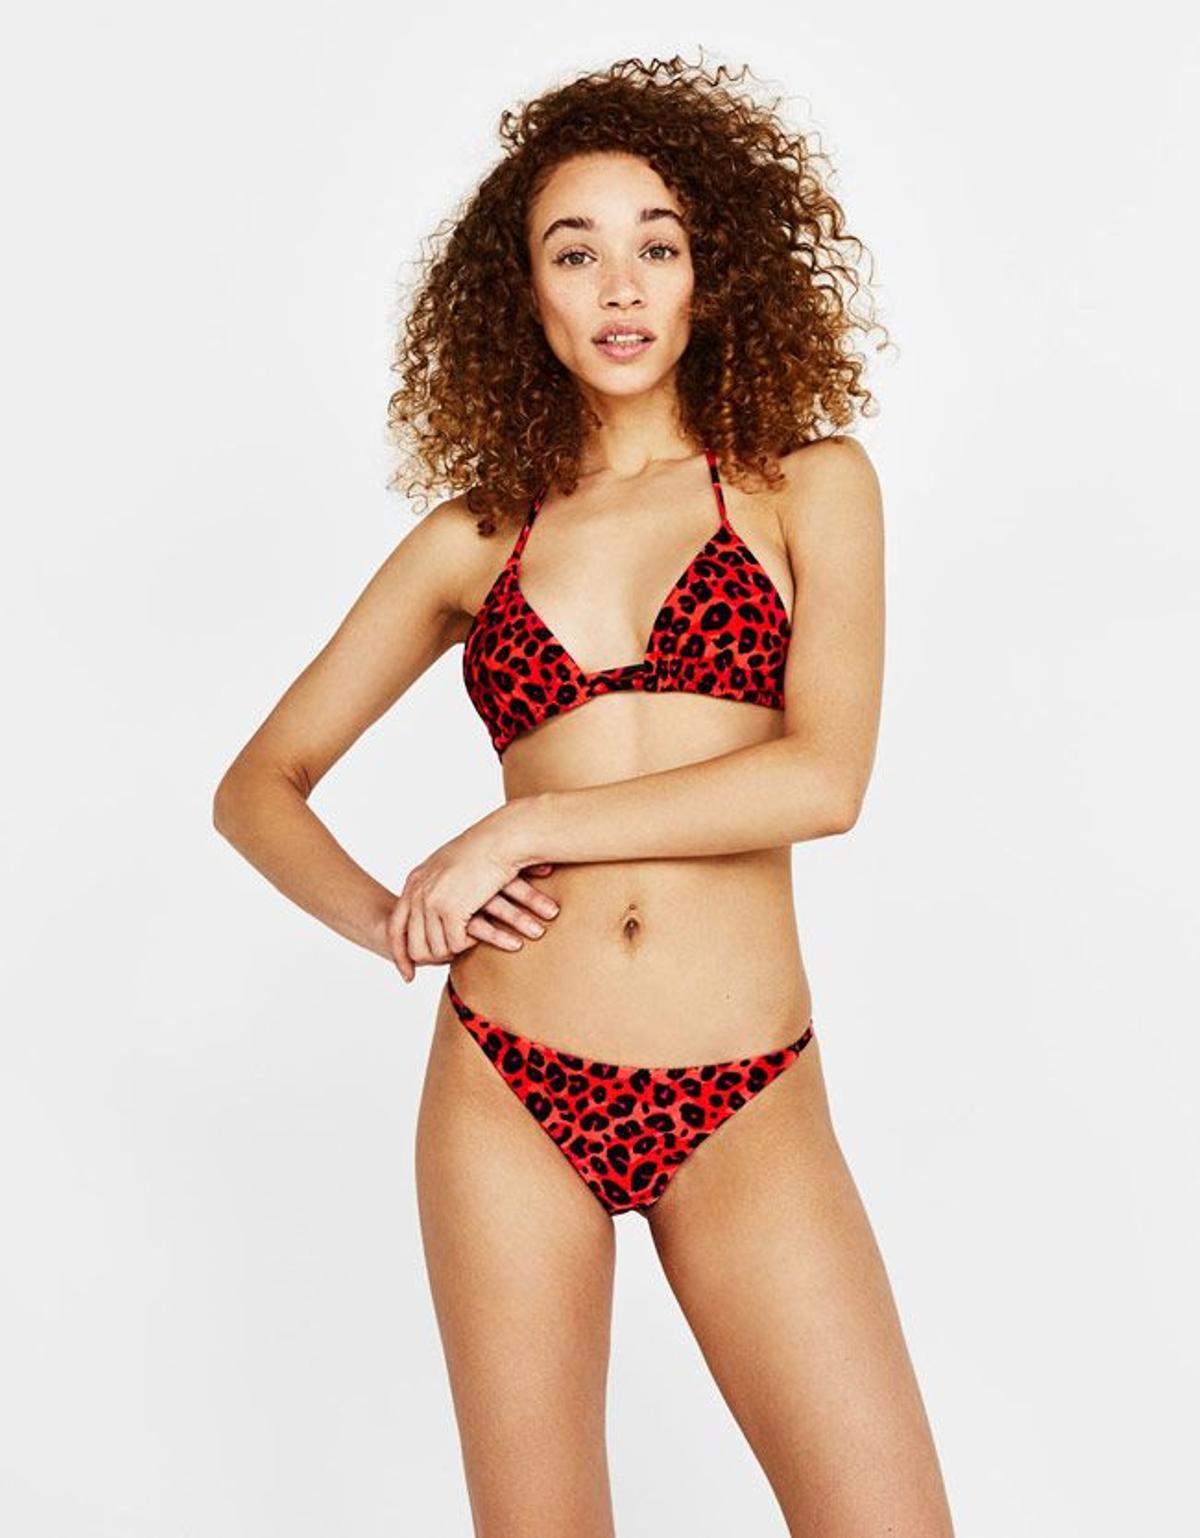 Swimwear Bershka 2018: bikini de leopardo